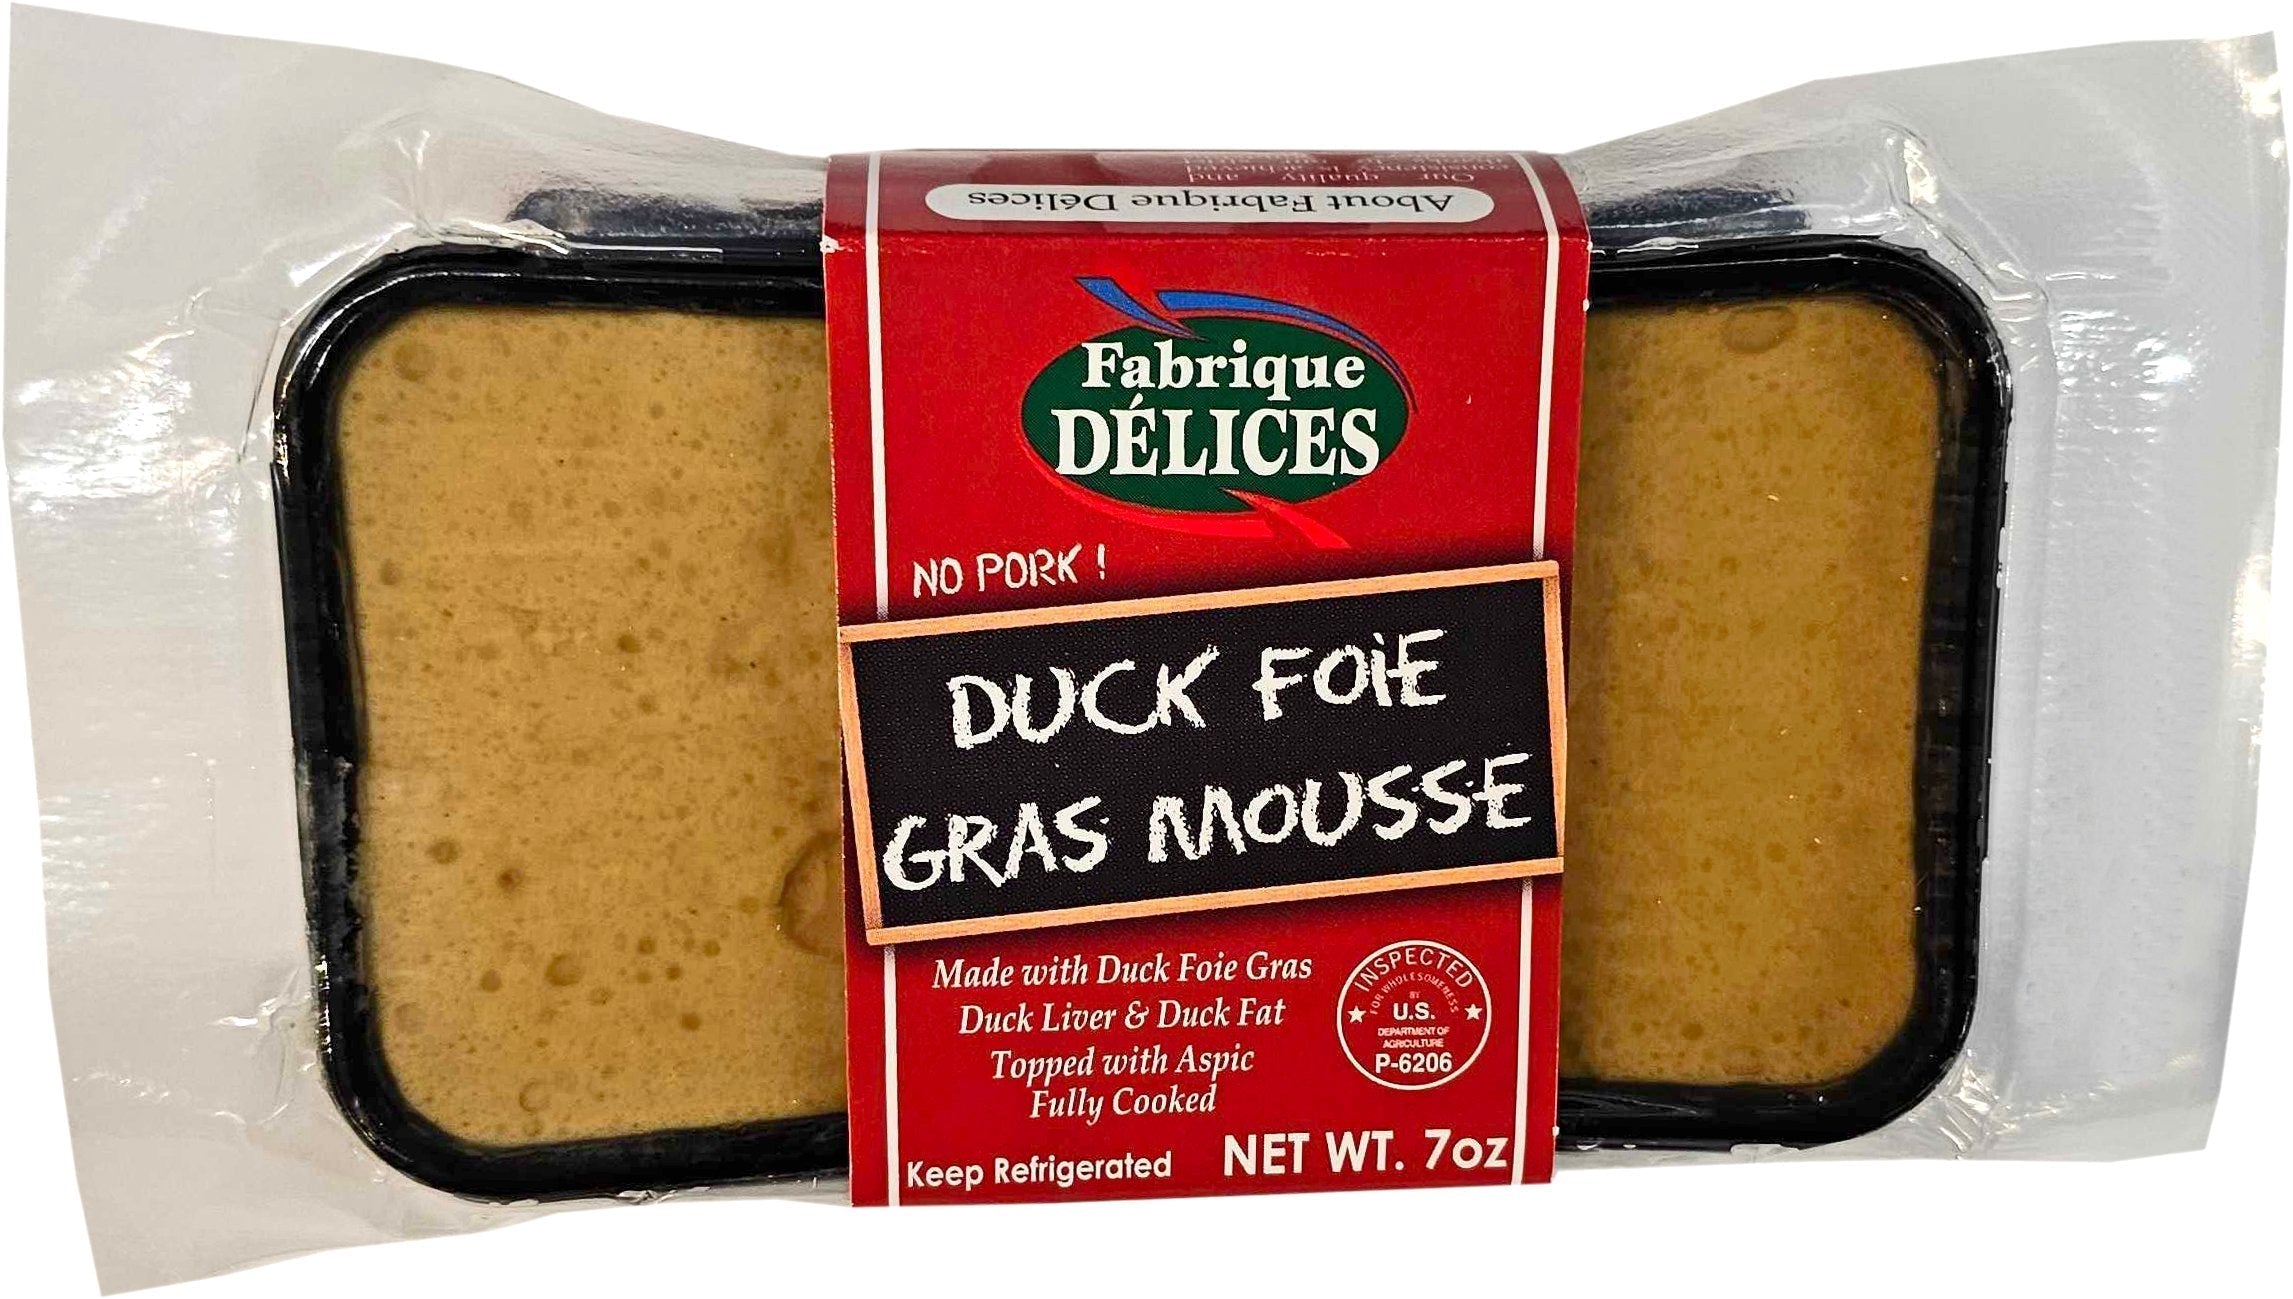 Fabrique Delices Duck Foie Gras Mousse 12 oz